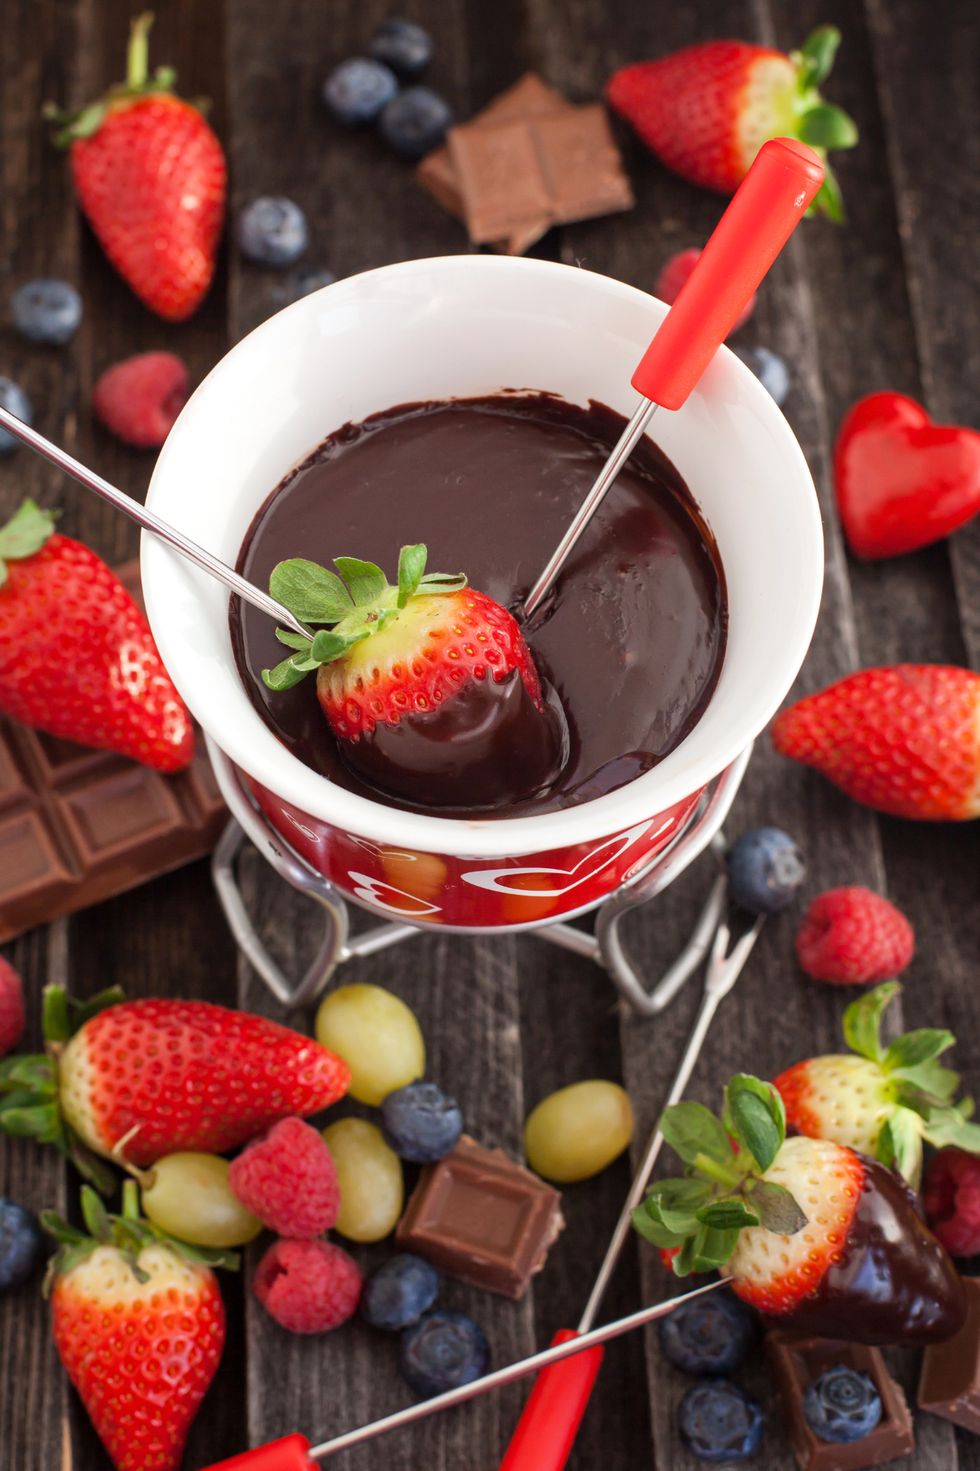 Chocolate fondue with fresh berries